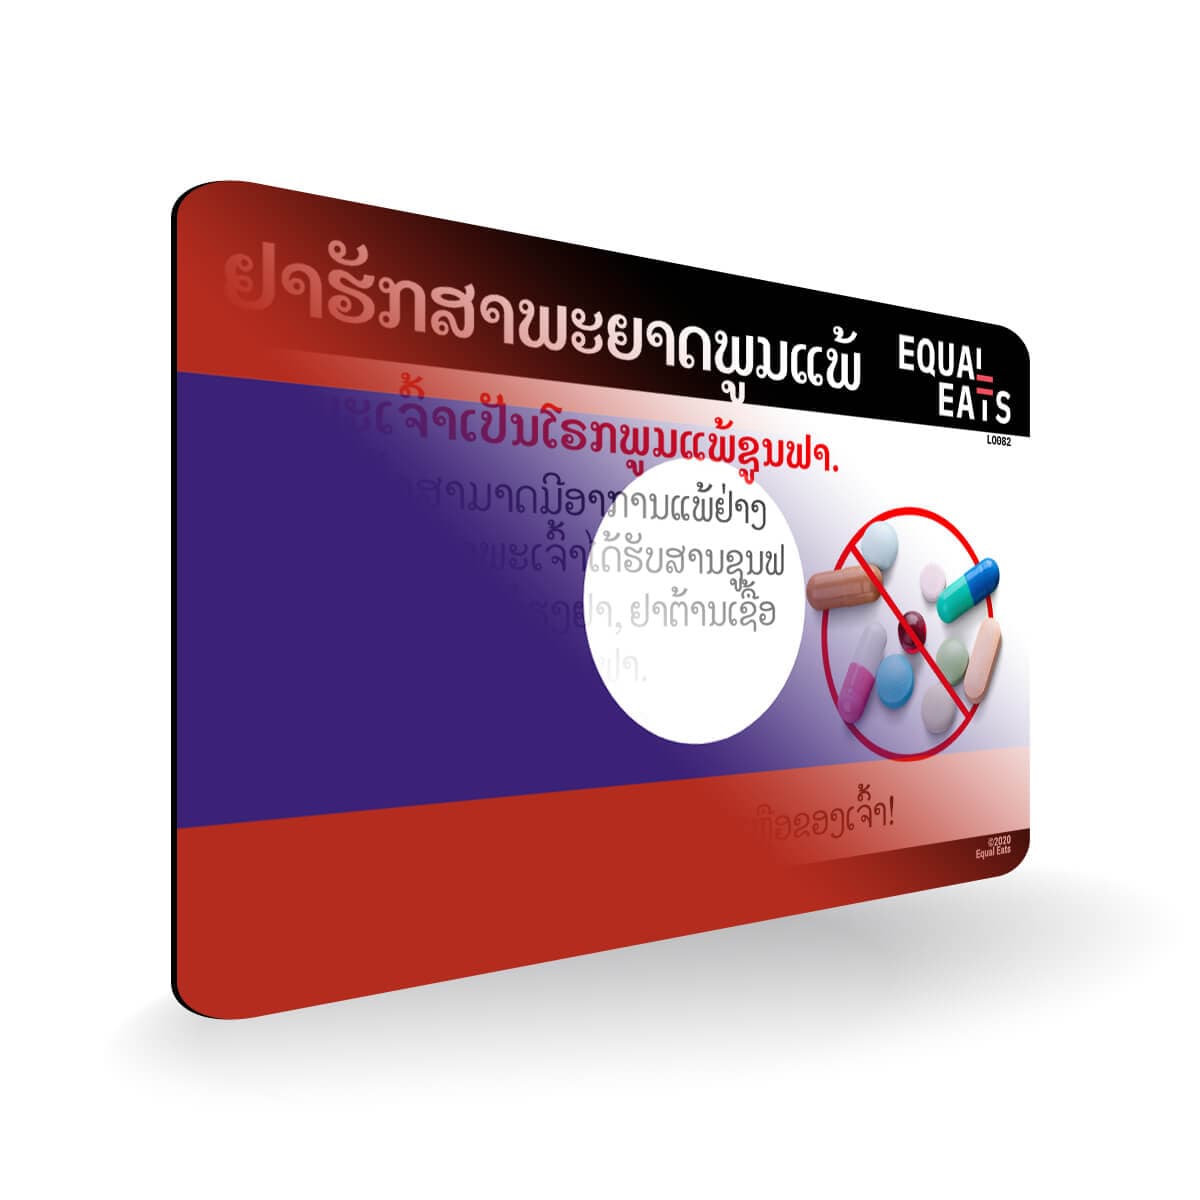 Sulfa Allergy in Lao. Sulfa Medicine Allergy Card for Laos